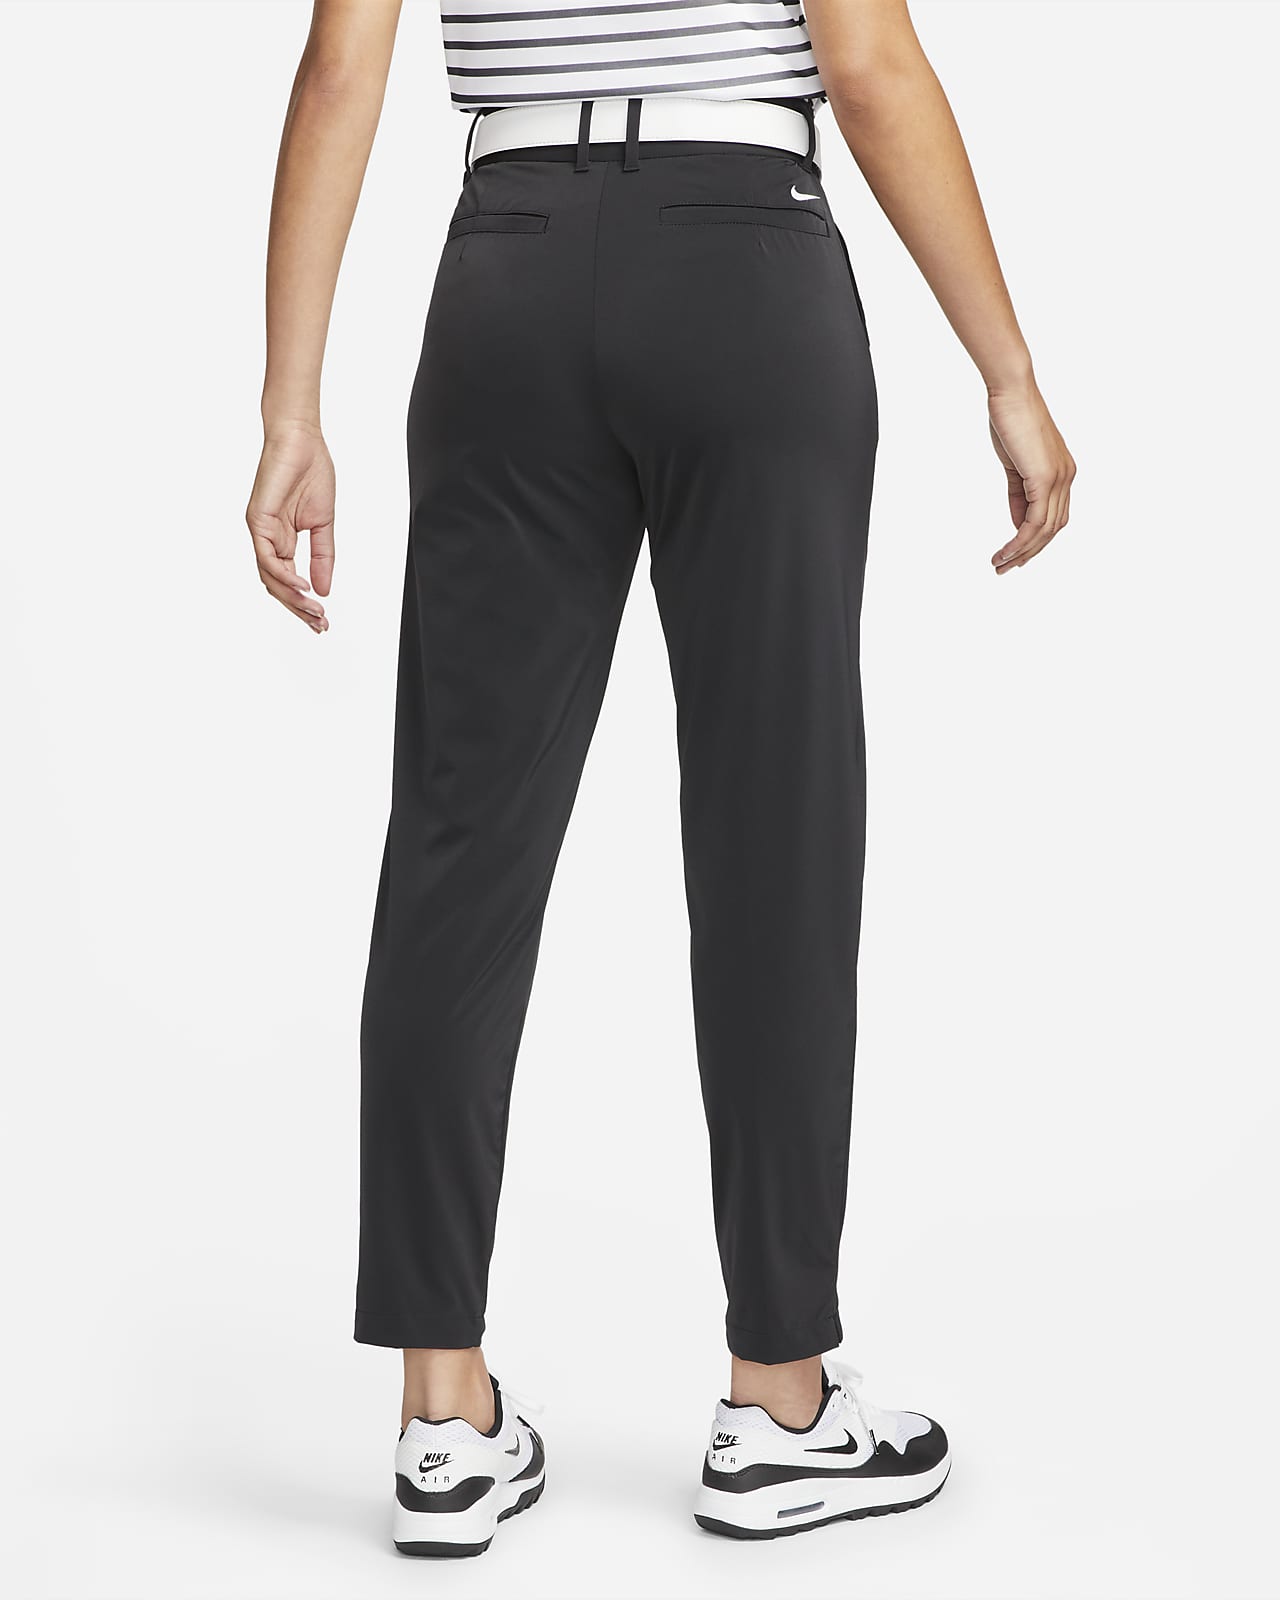 Womens Dri-FIT Golf Pants & Tights. Nike JP